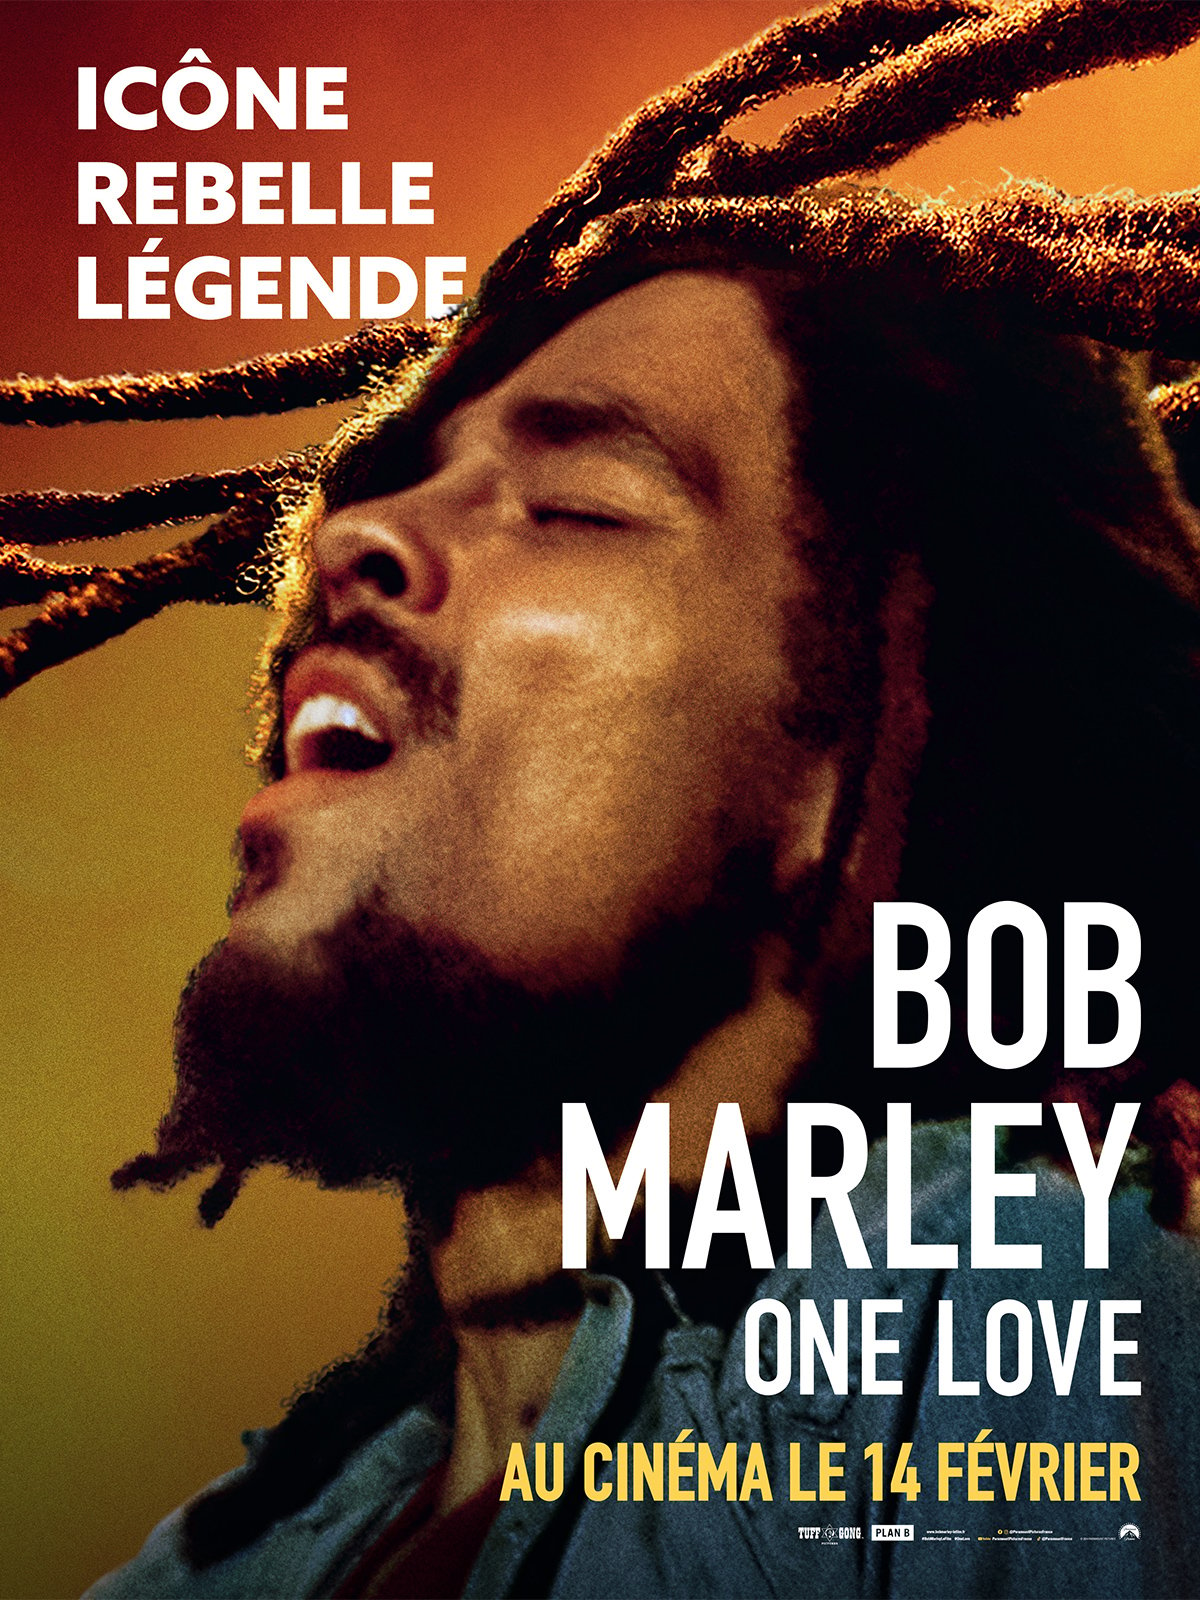 Bob Marley: One Love célèbre la vie et la musique d'une icône qui a inspiré des générations à travers son message d'amour et d'unité. Pour la première fois sur grand écran, découvrez l'histoire puissante de Bob Marley.